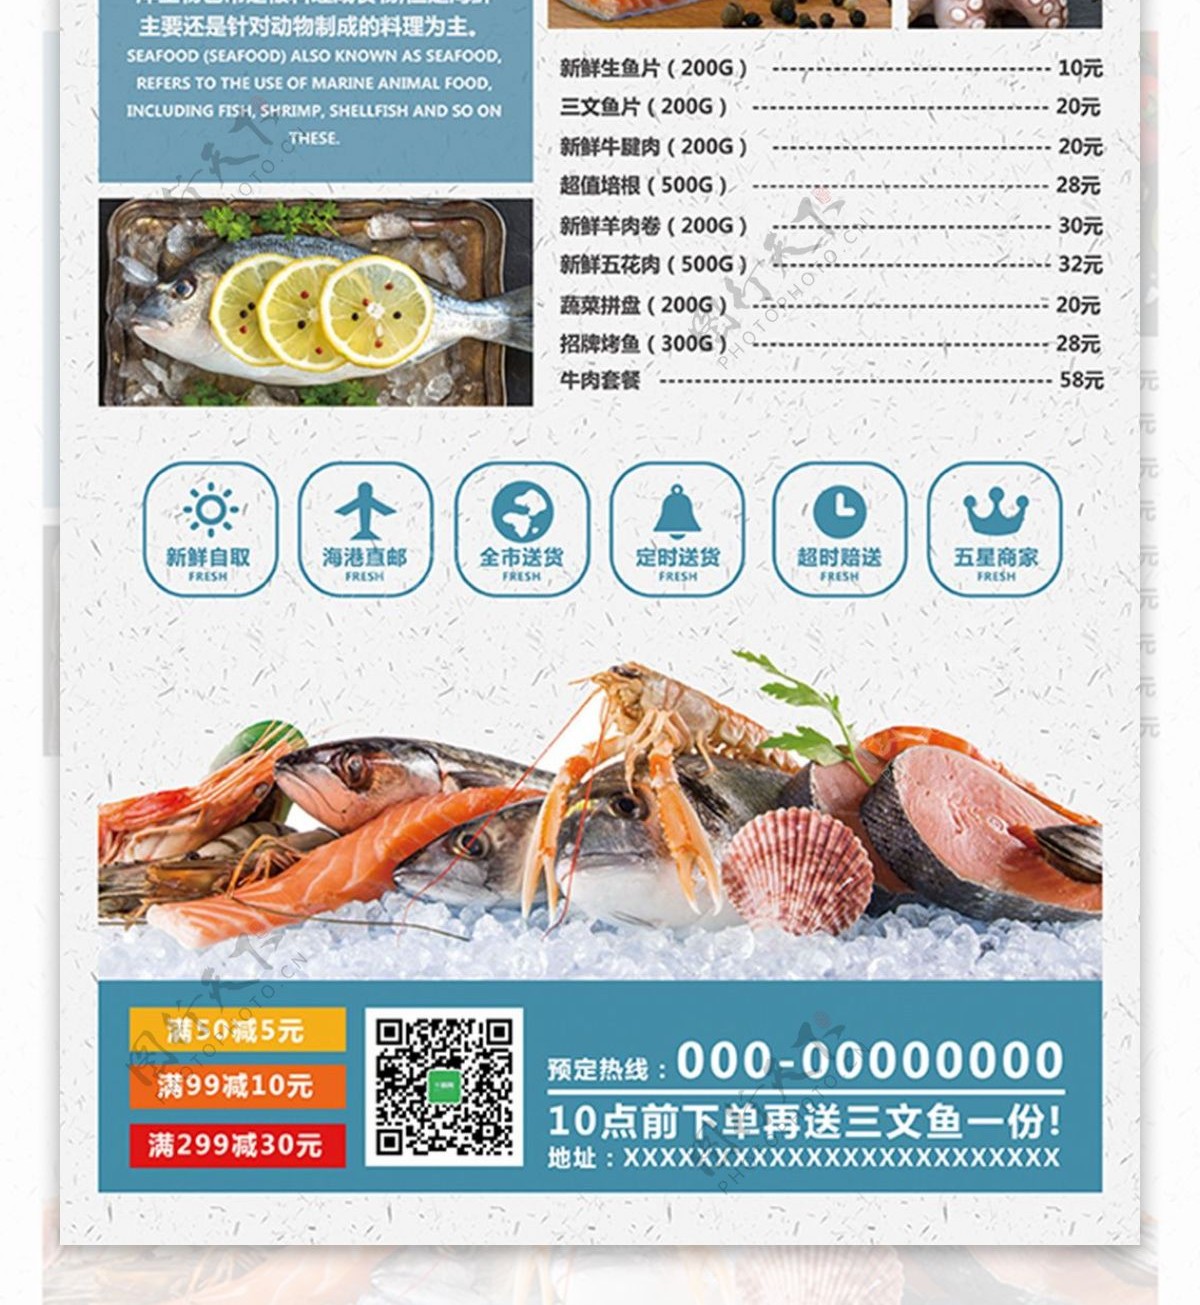 海鲜自助美食DM宣传单